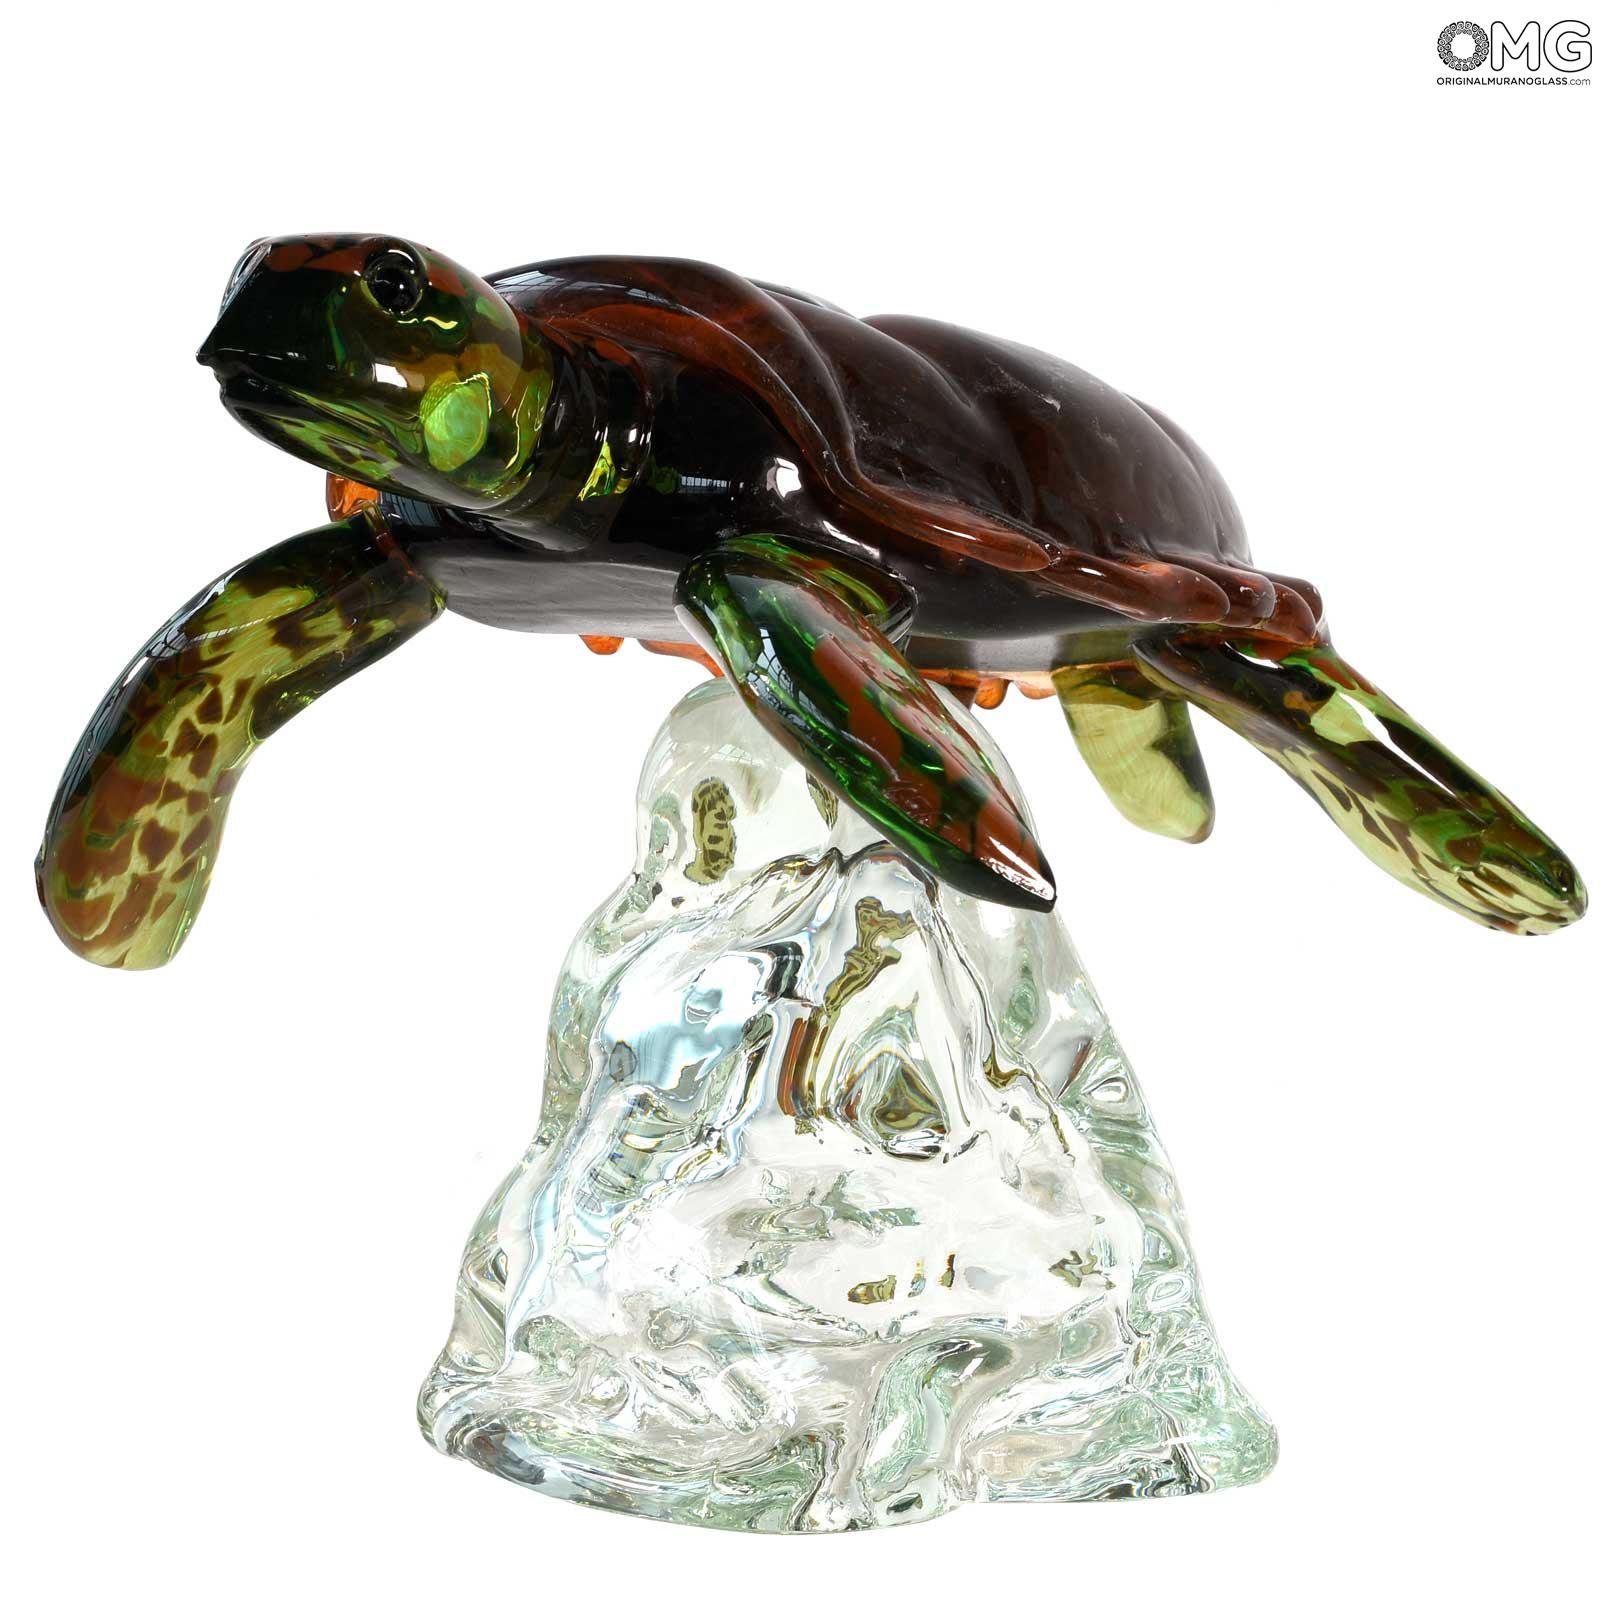 B22 Crocodile Turtle  decor gift Murano blown glass figurine art sculpture 